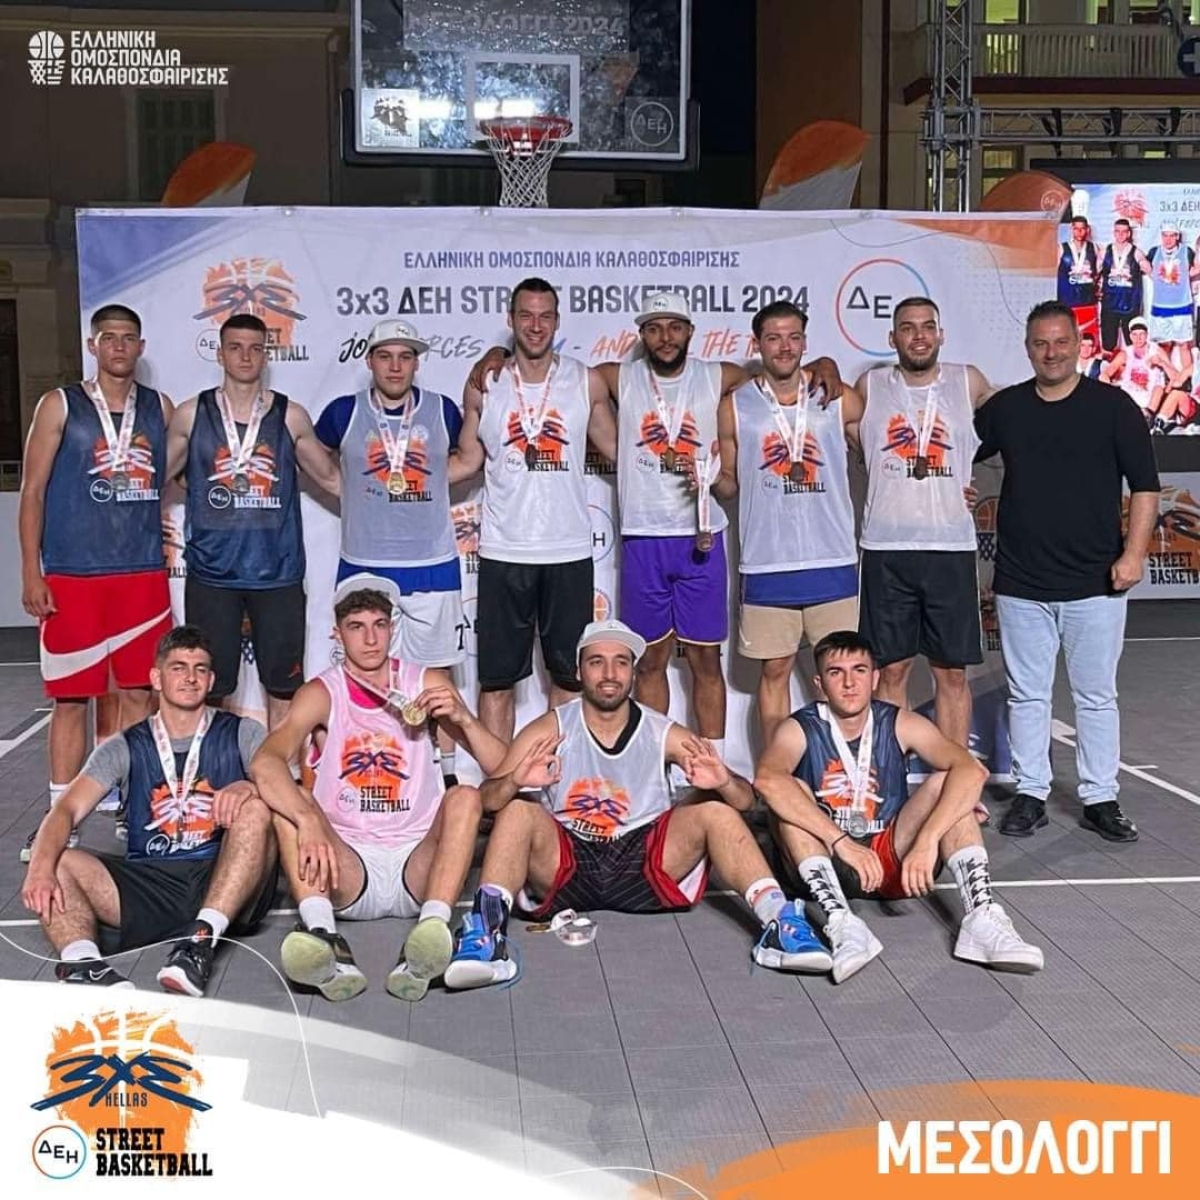 Ολοκληρώθηκε με επιτυχία το 3x3 ΔΕΗ Street Basketball στο Μεσολόγγι